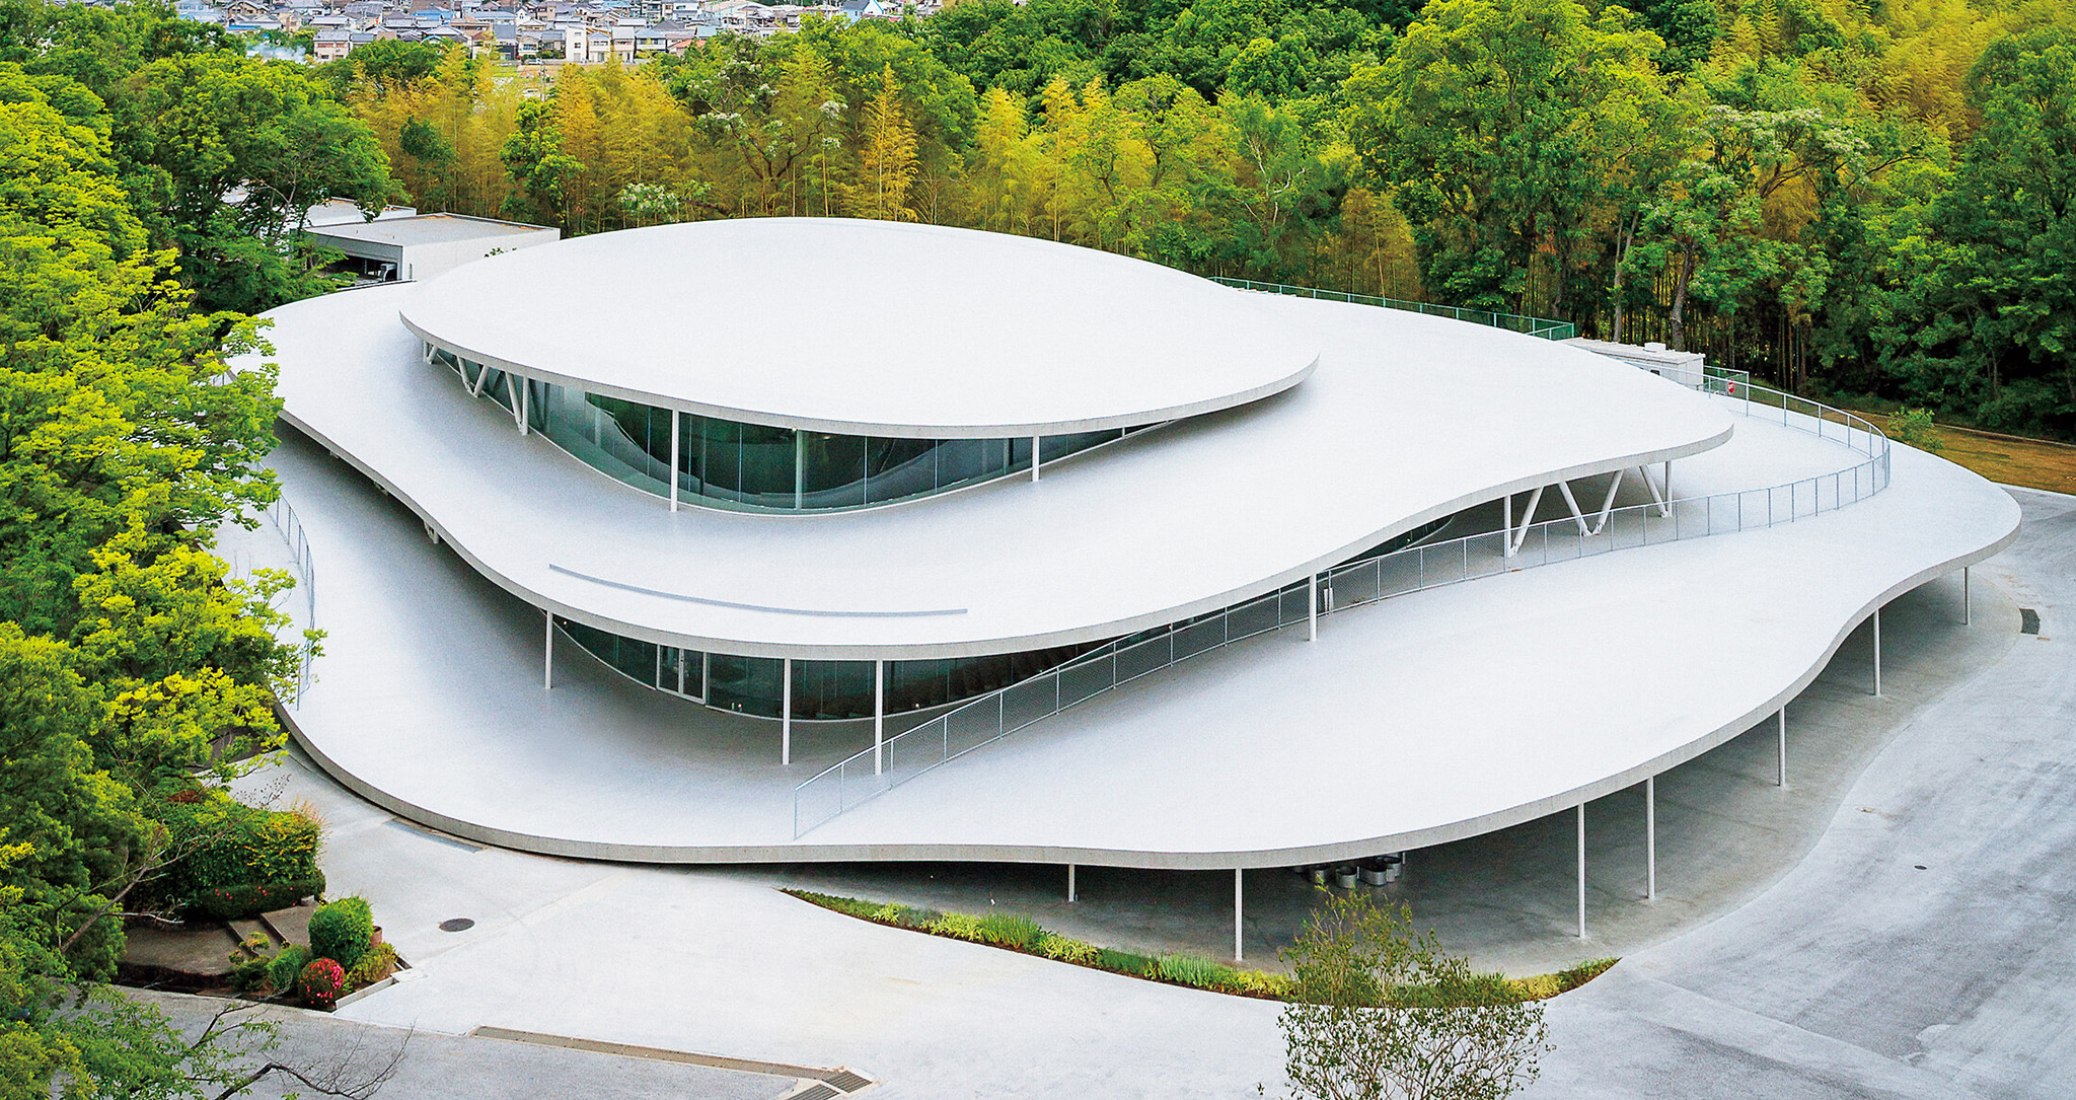 Osaka Art University Facility by Kazuyo Sejima. Photograph courtesy of Osaka Art University